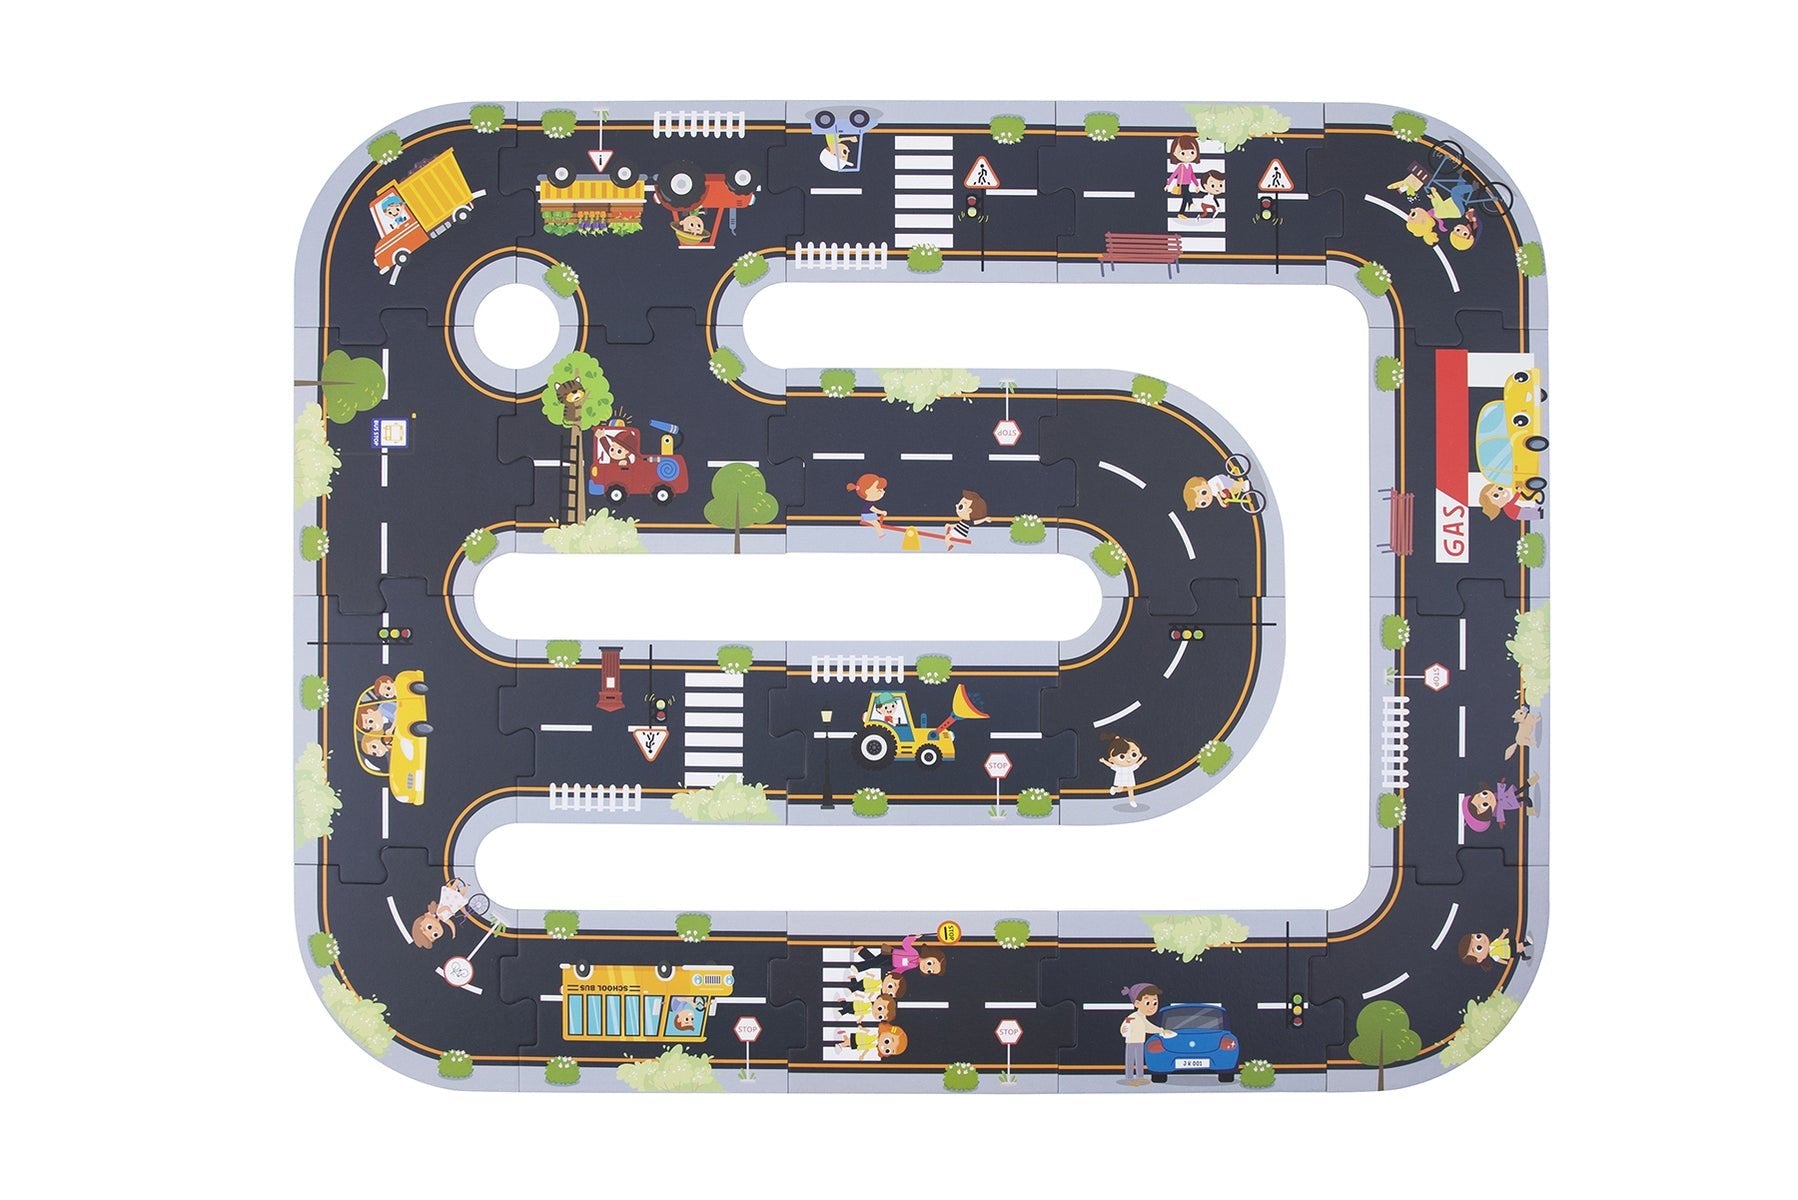 City Road Puzzle Playmat